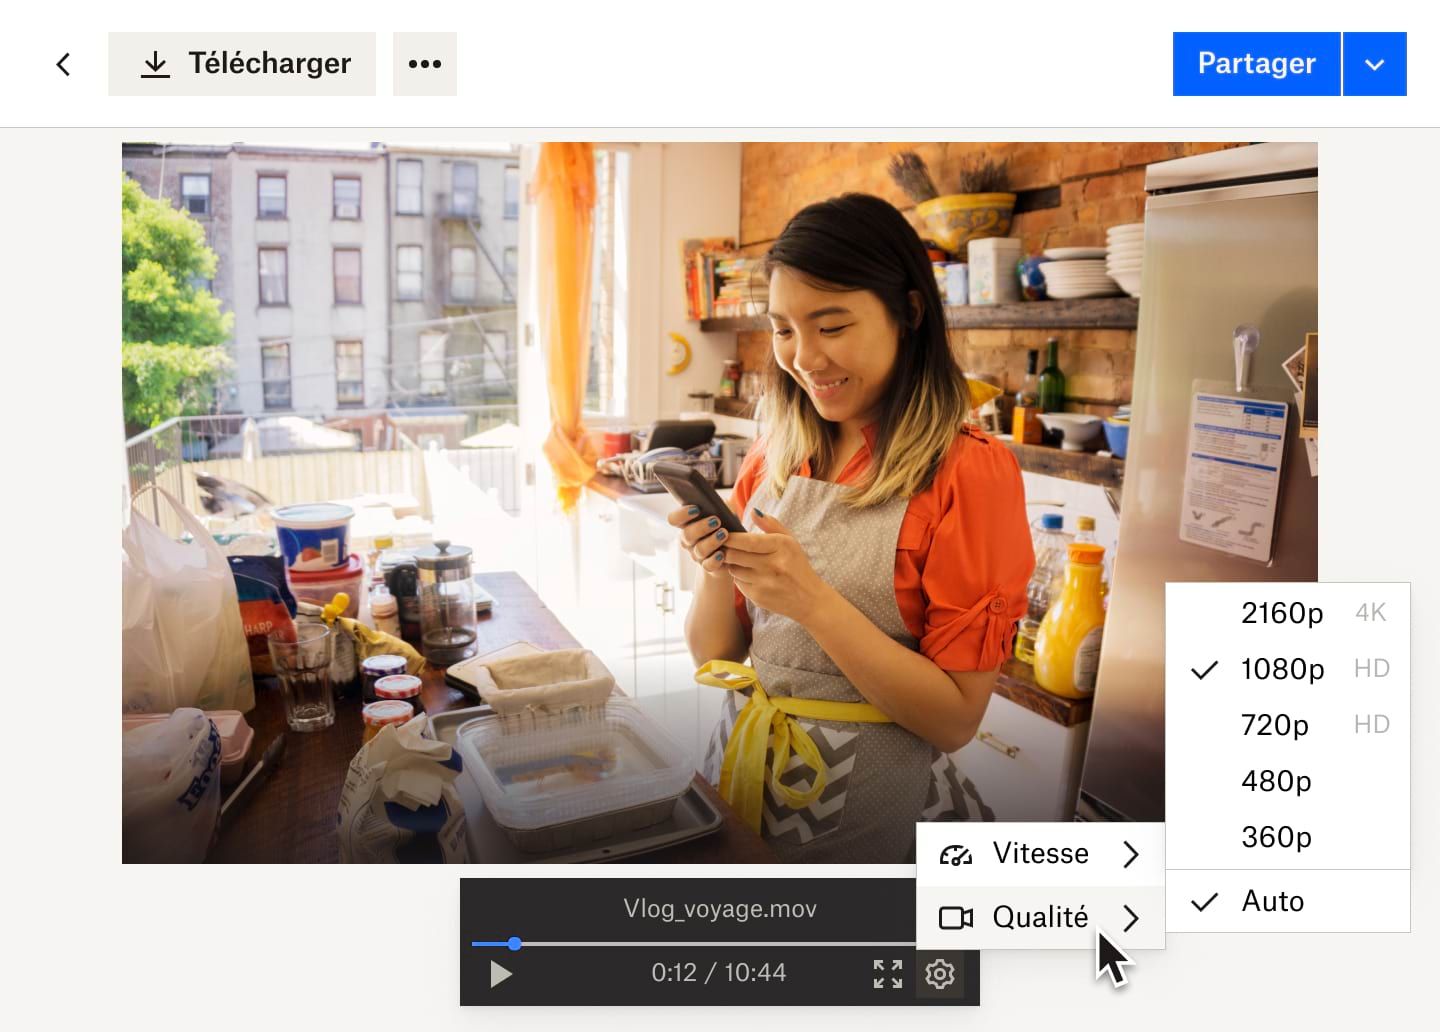 Menu déroulant du bouton “Paramètres” illustrant les options de vitesse et de qualité vidéo d'un fichier vidéo Dropbox montrant une femme qui travaille dans une boulangerie